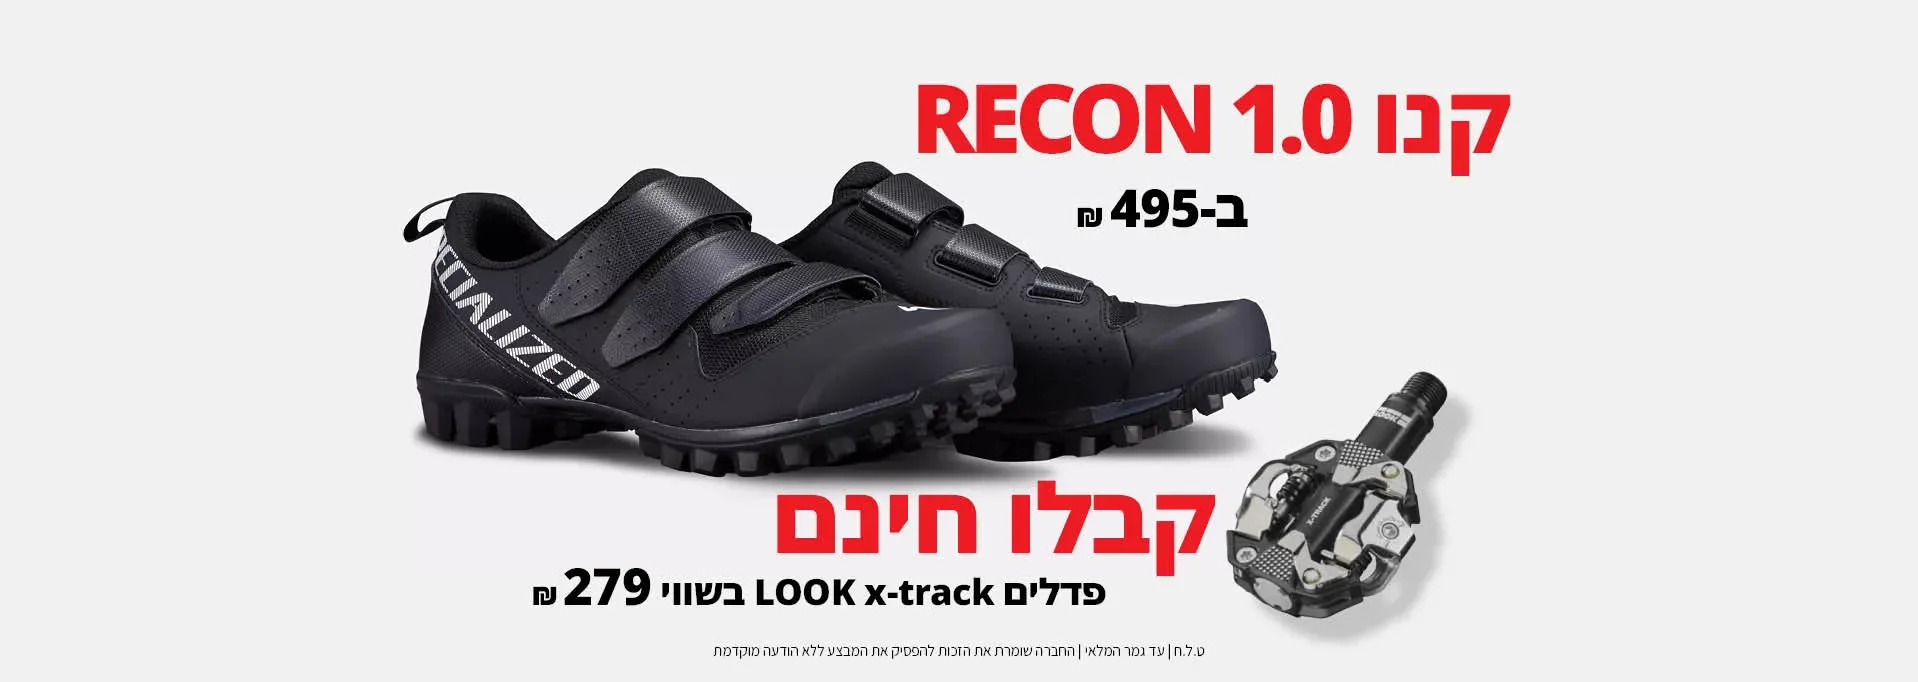 קנה נעלי Recon 1.0 וקבל פדלים לאופני הרים תואם X-TRACK